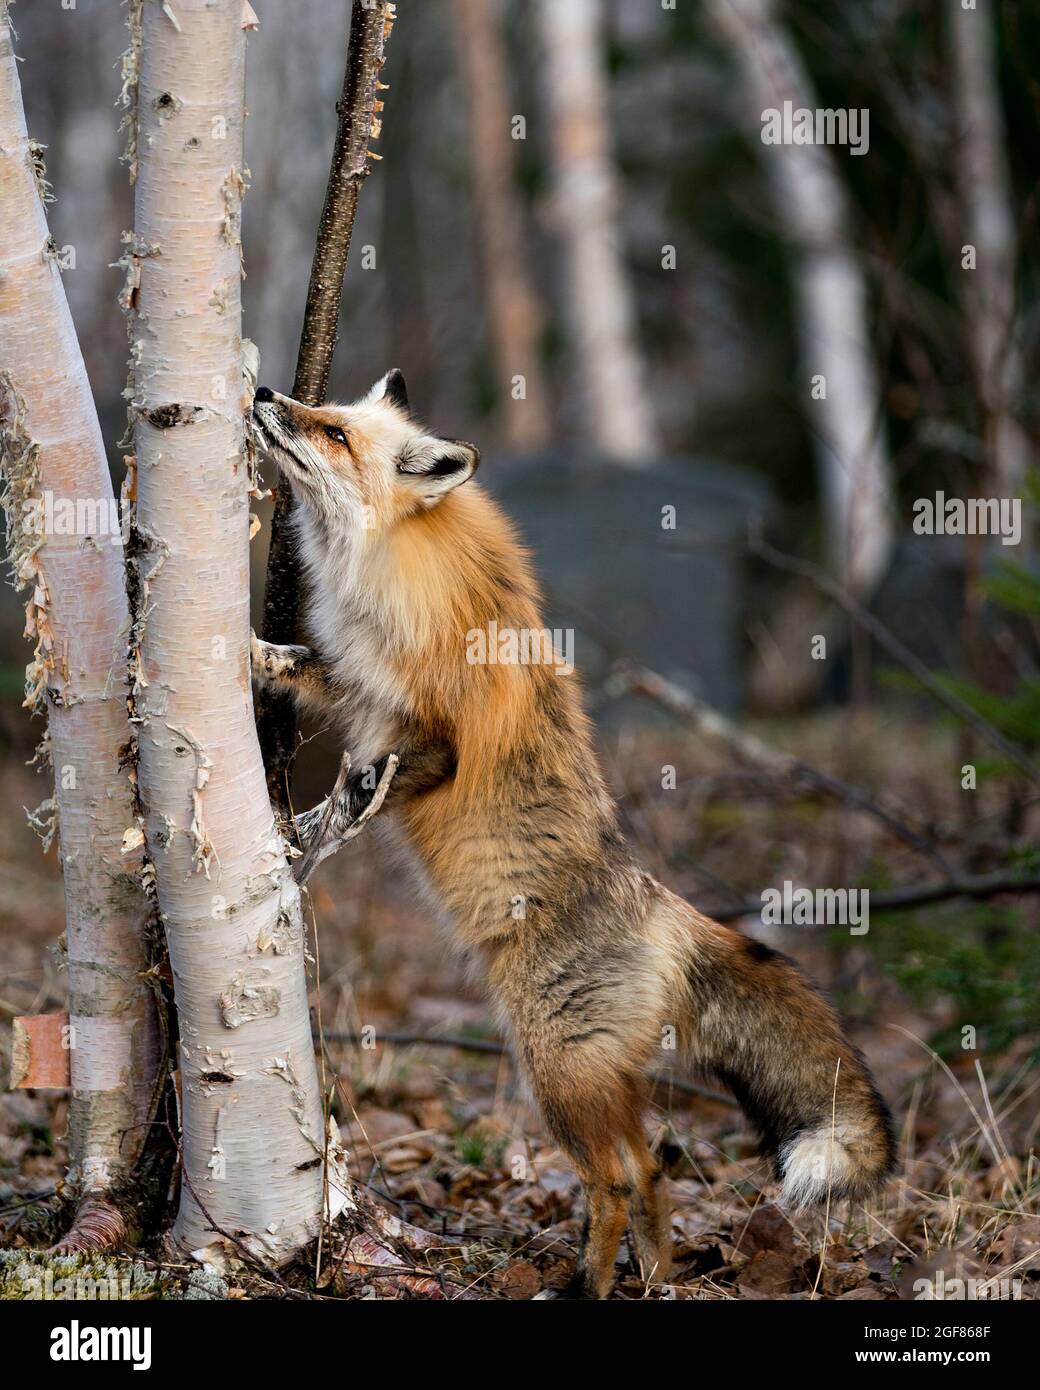 Roter einzigartiger Fuchs, der auf Hinterbeinen bei einer Birke auf der Suche nach ihrer Beute steht, mit einem verwackerten Waldhintergrund in der Frühjahrssaison in seiner Umgebung. Fuchs. Stockfoto